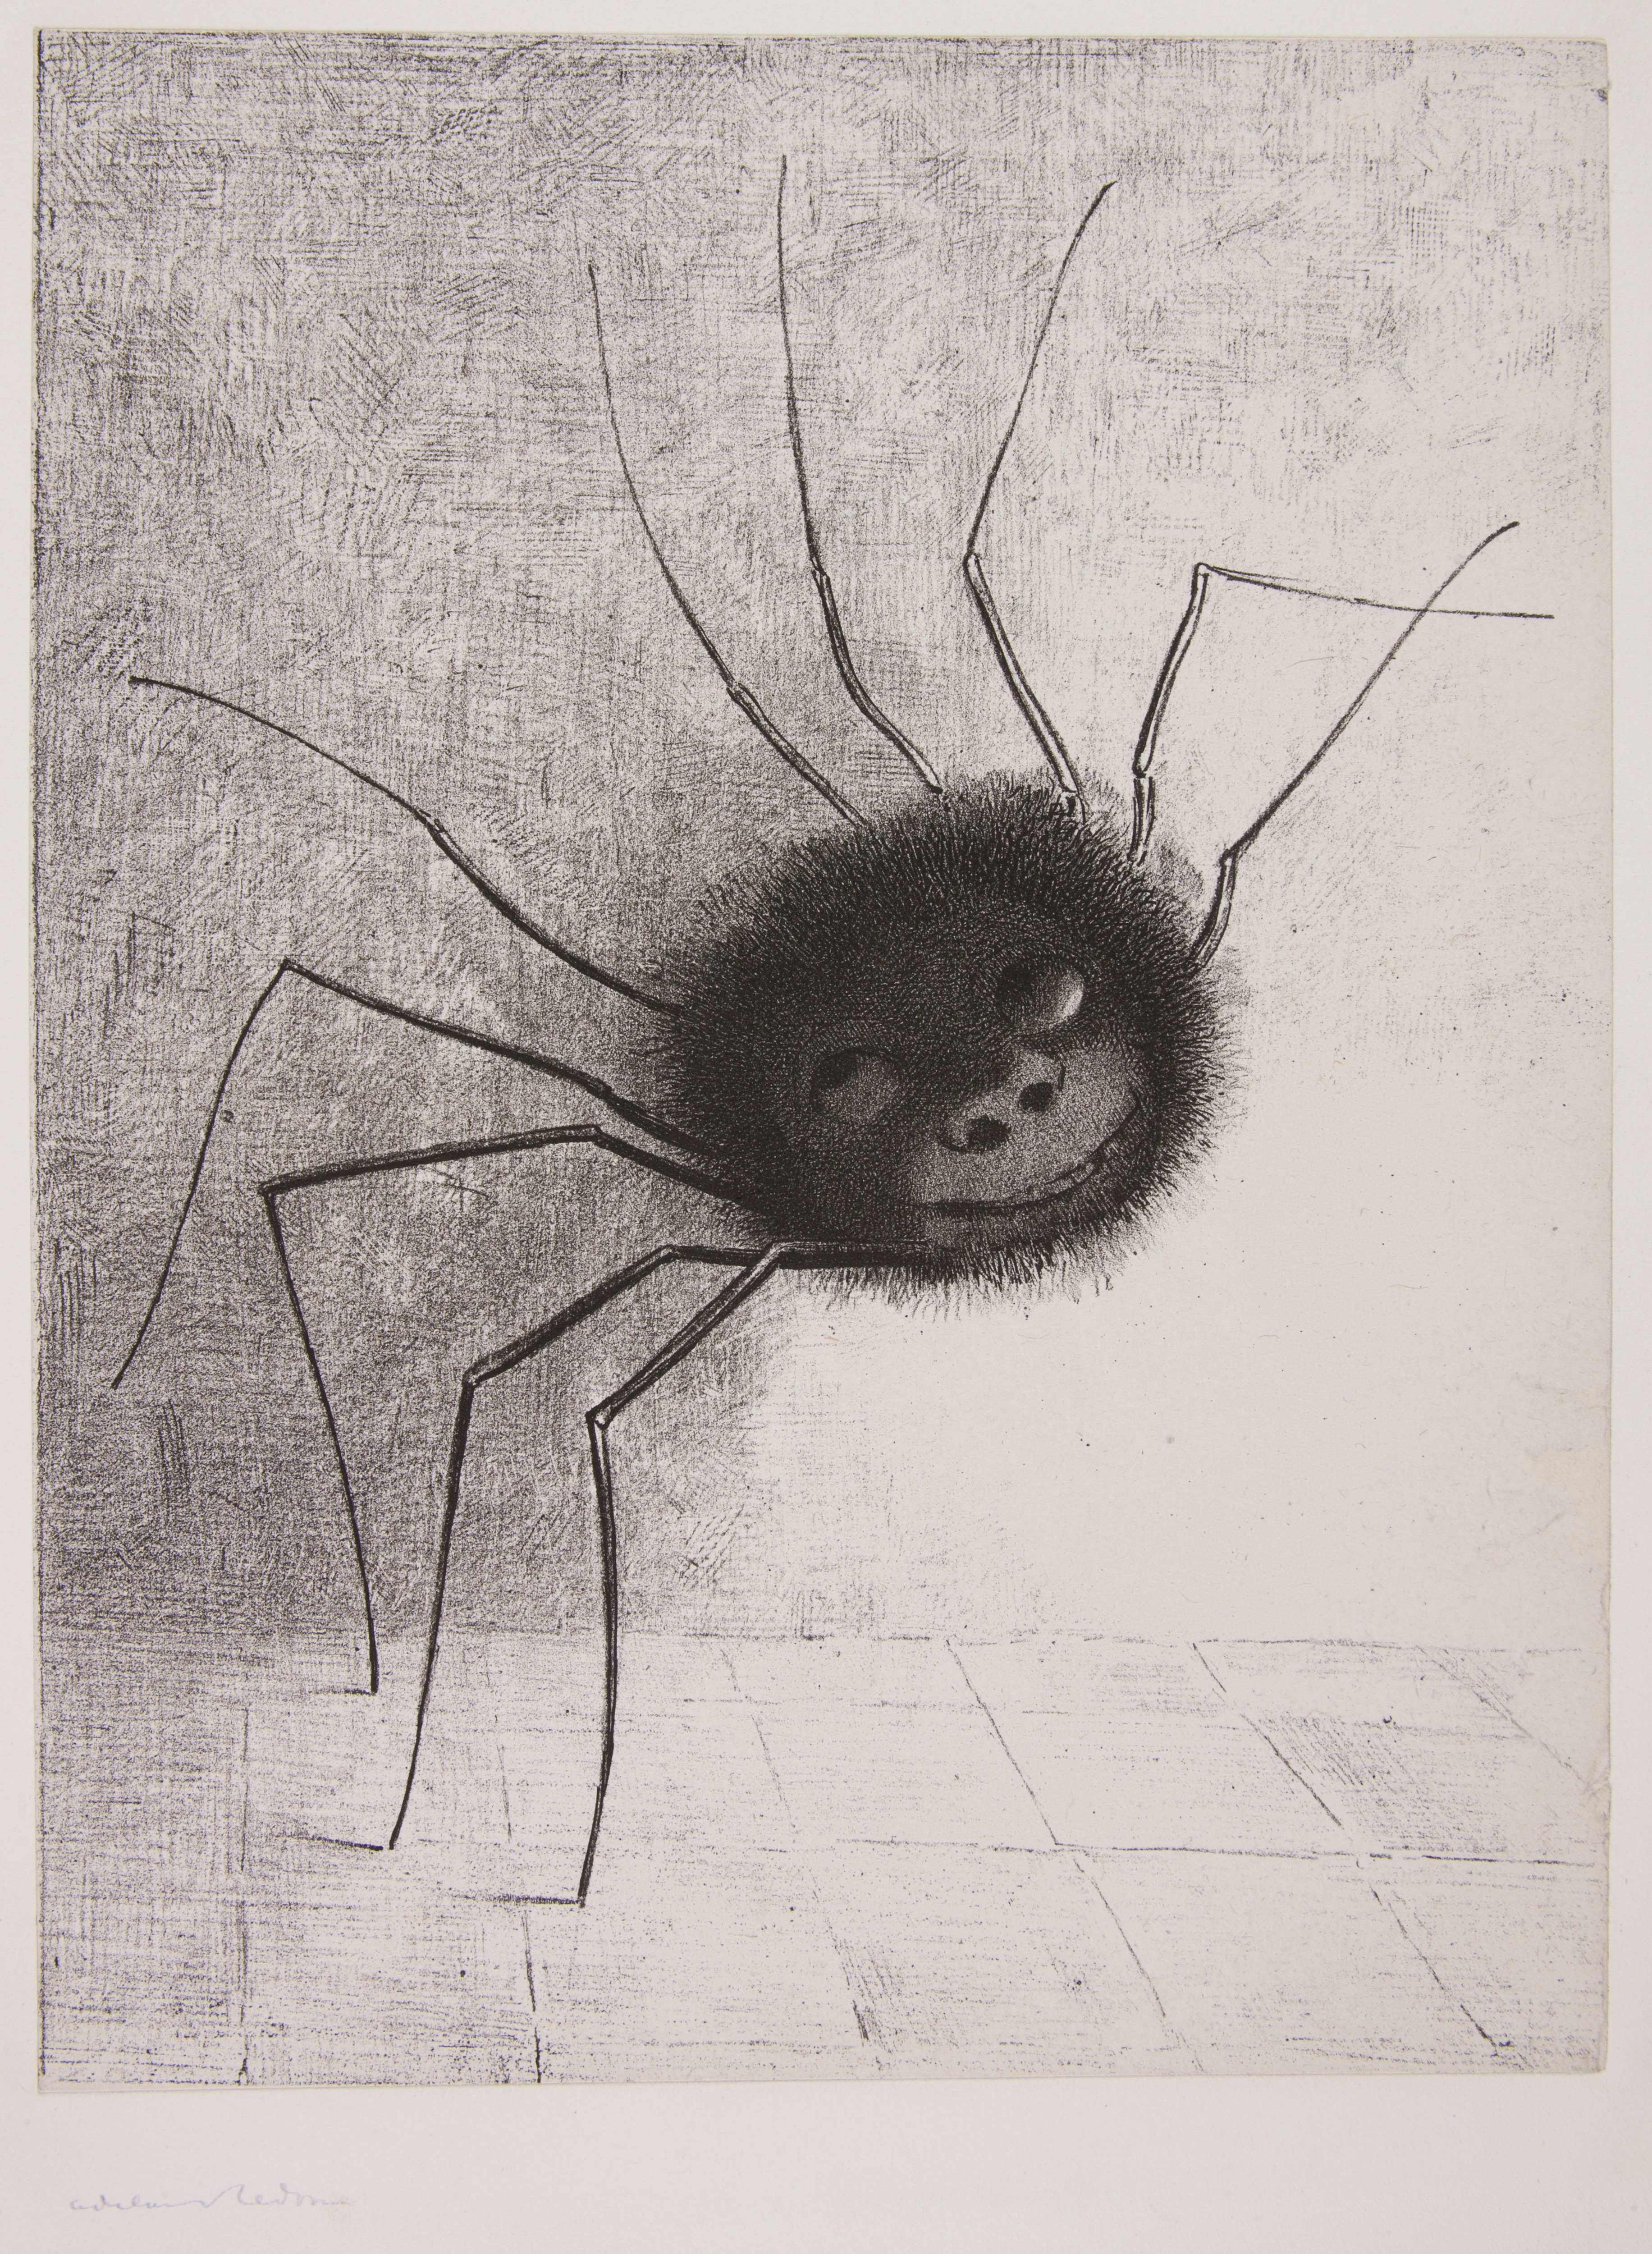 Păianjen by Odilon Redon - 1887 - - 